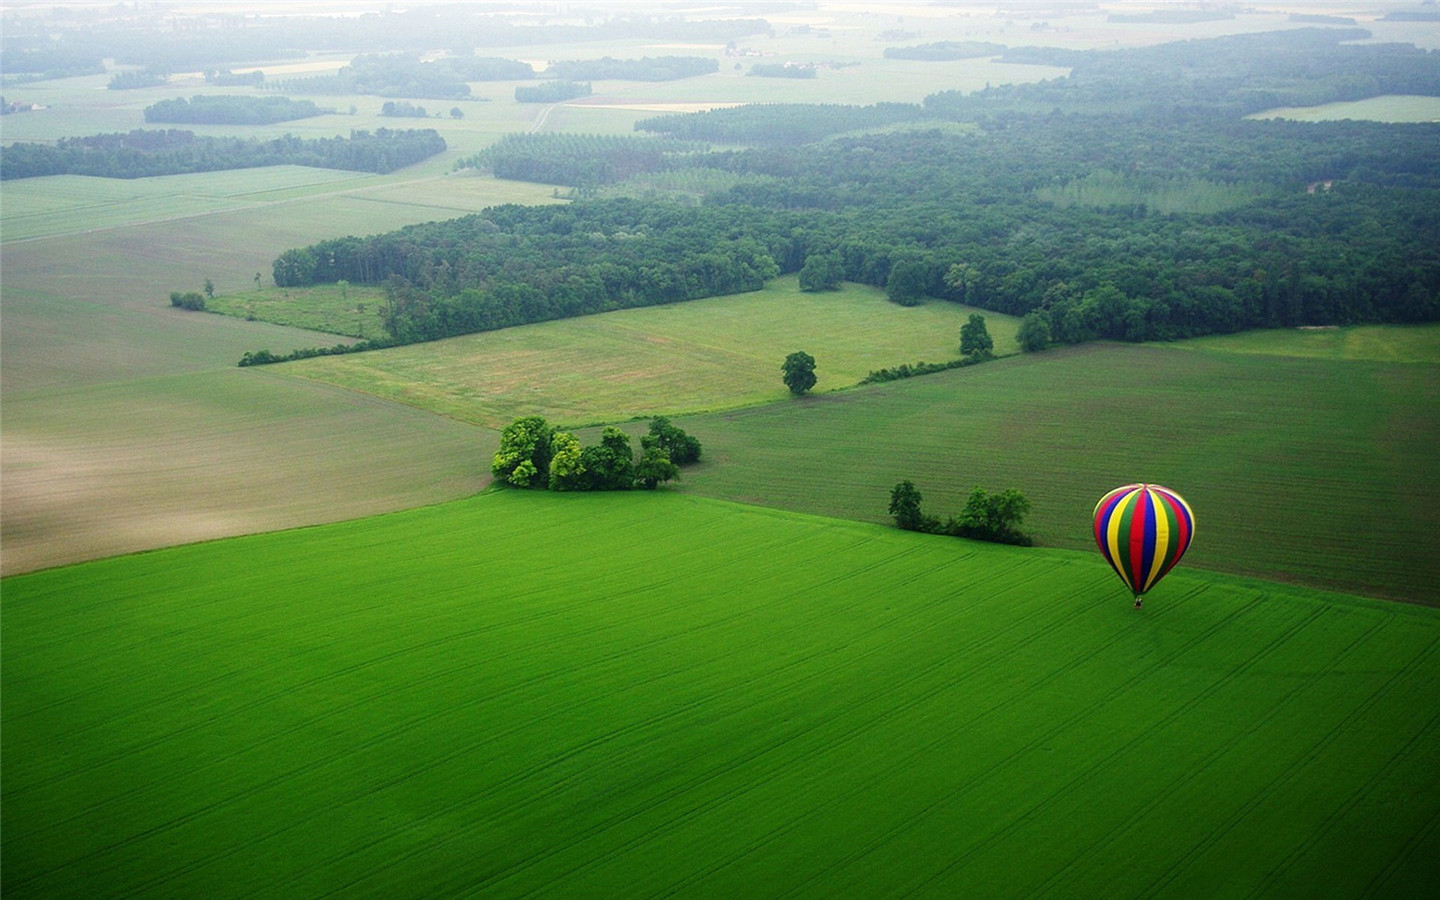 运载梦想的热气球风景桌面壁纸_360社区